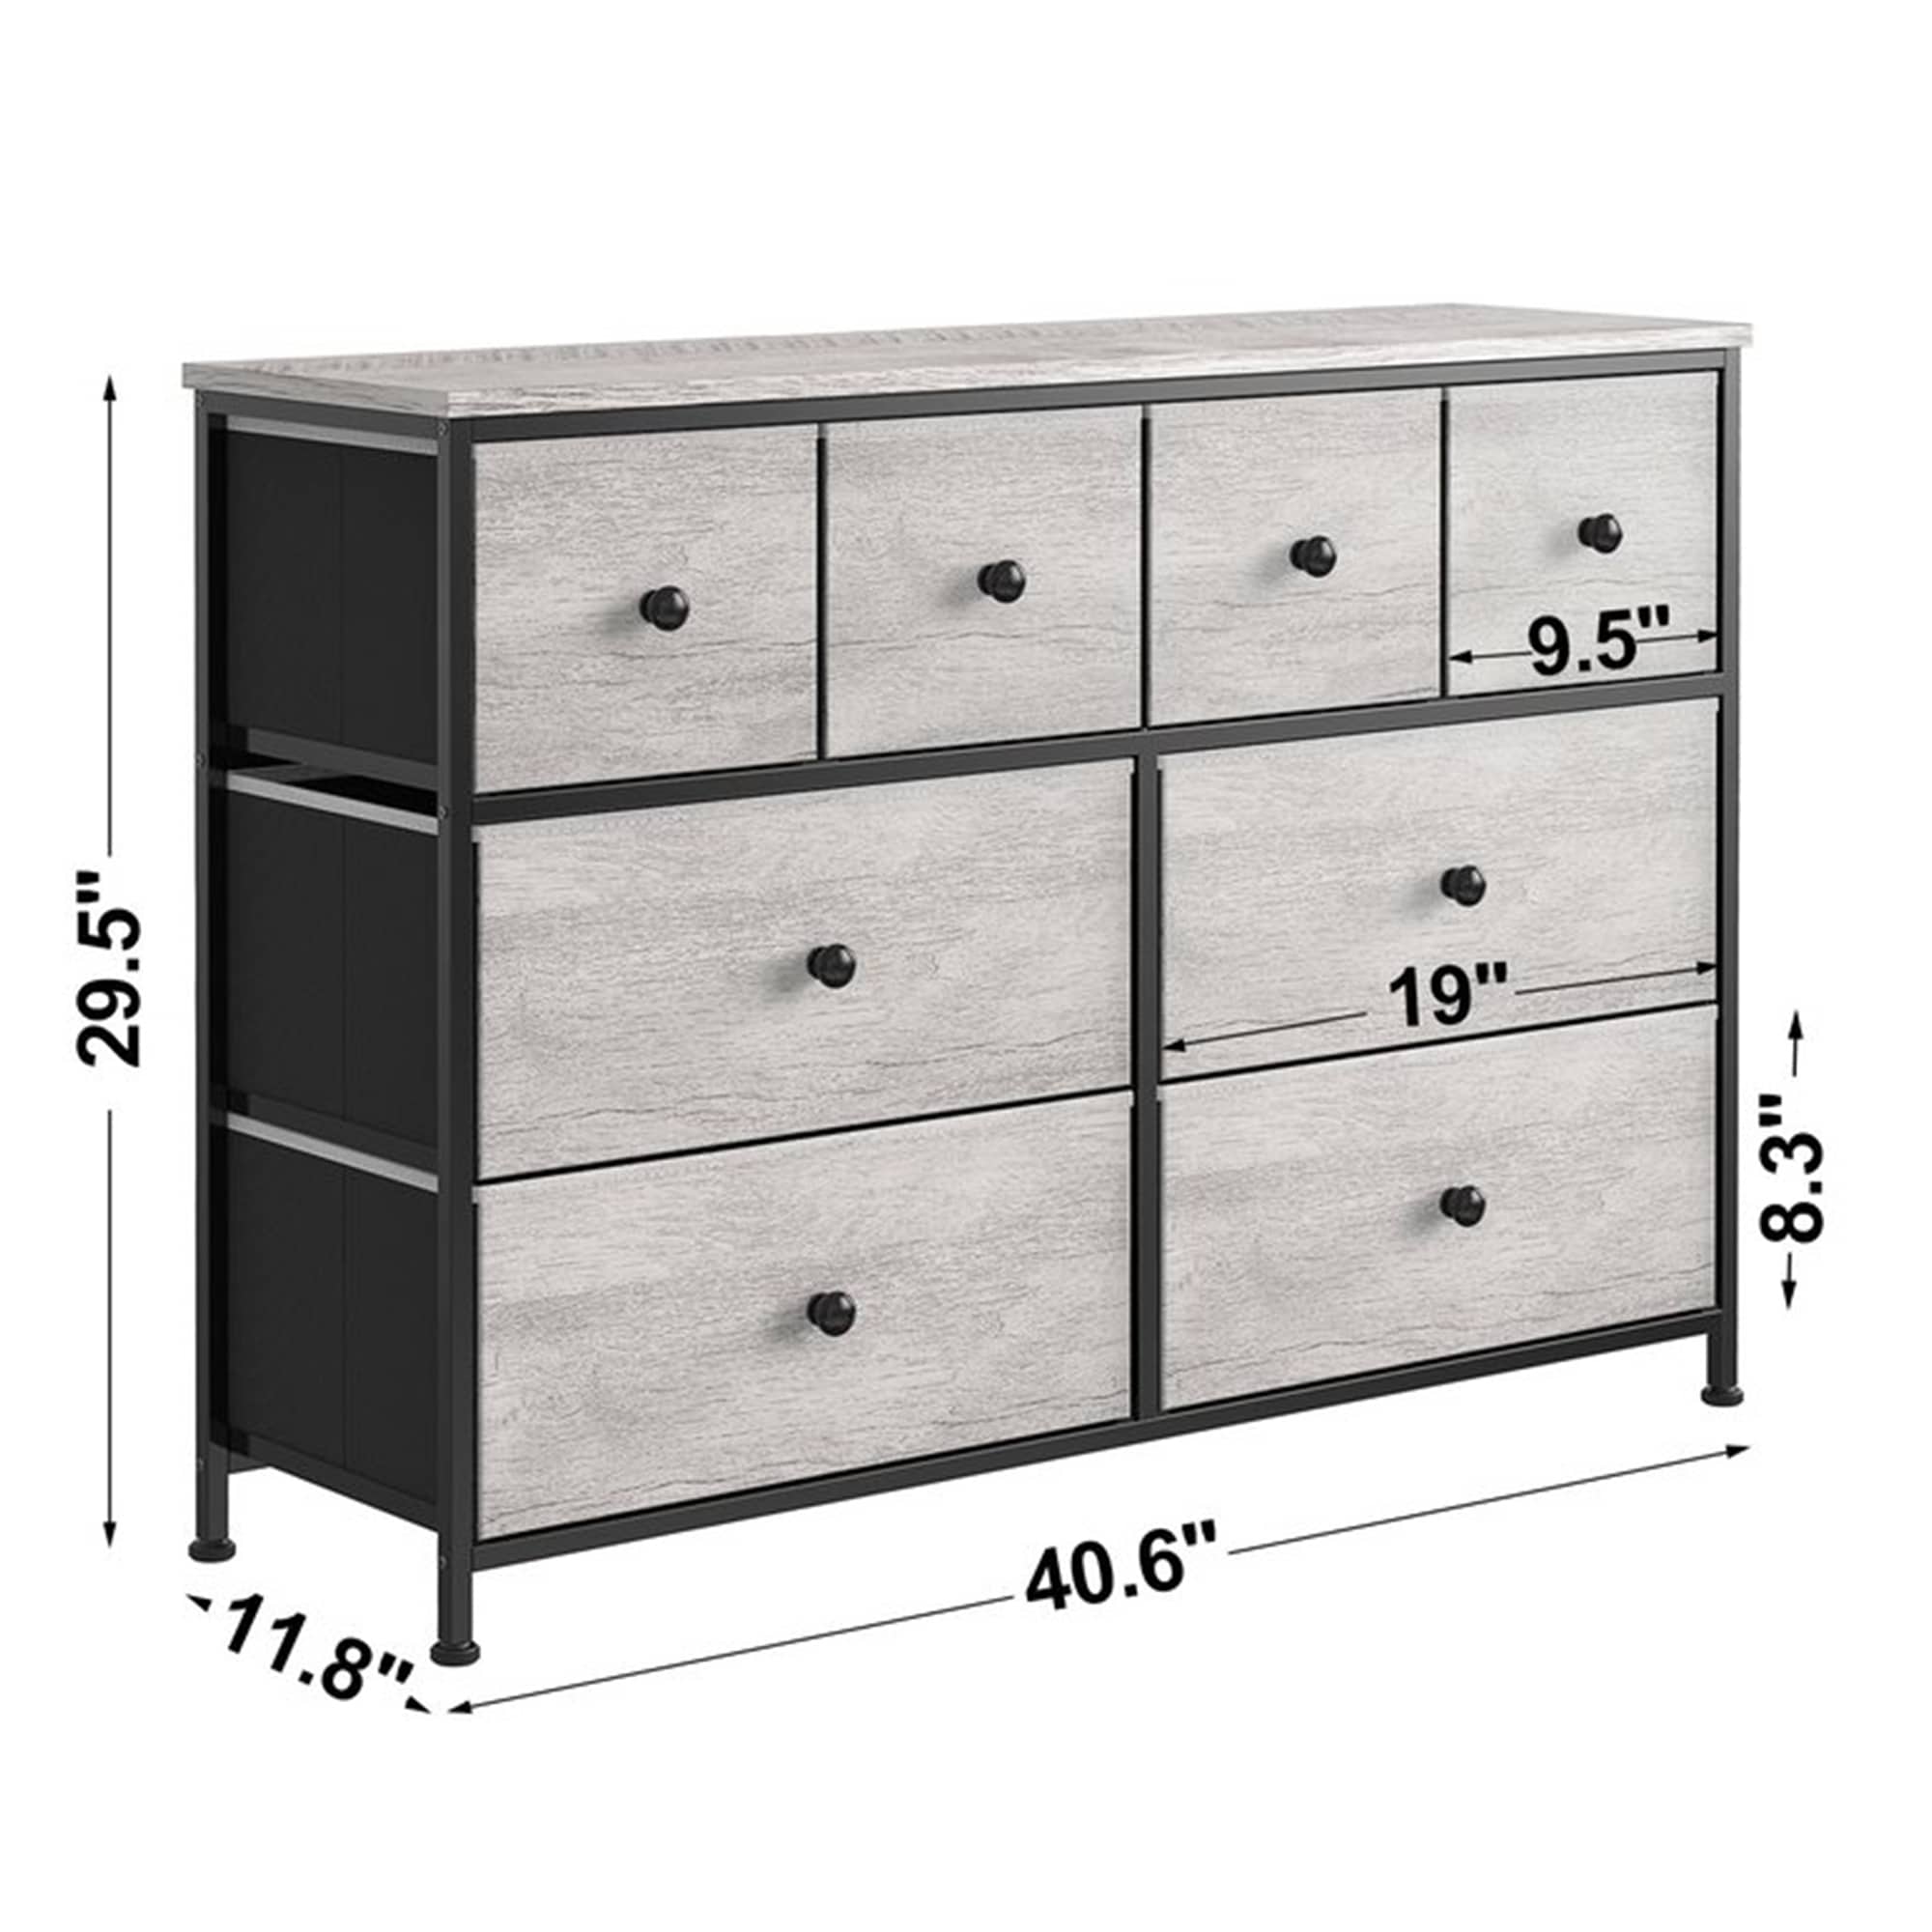 REAHOME 4 Drawer Vertical Storage Organizer Narrow Tower Dresser